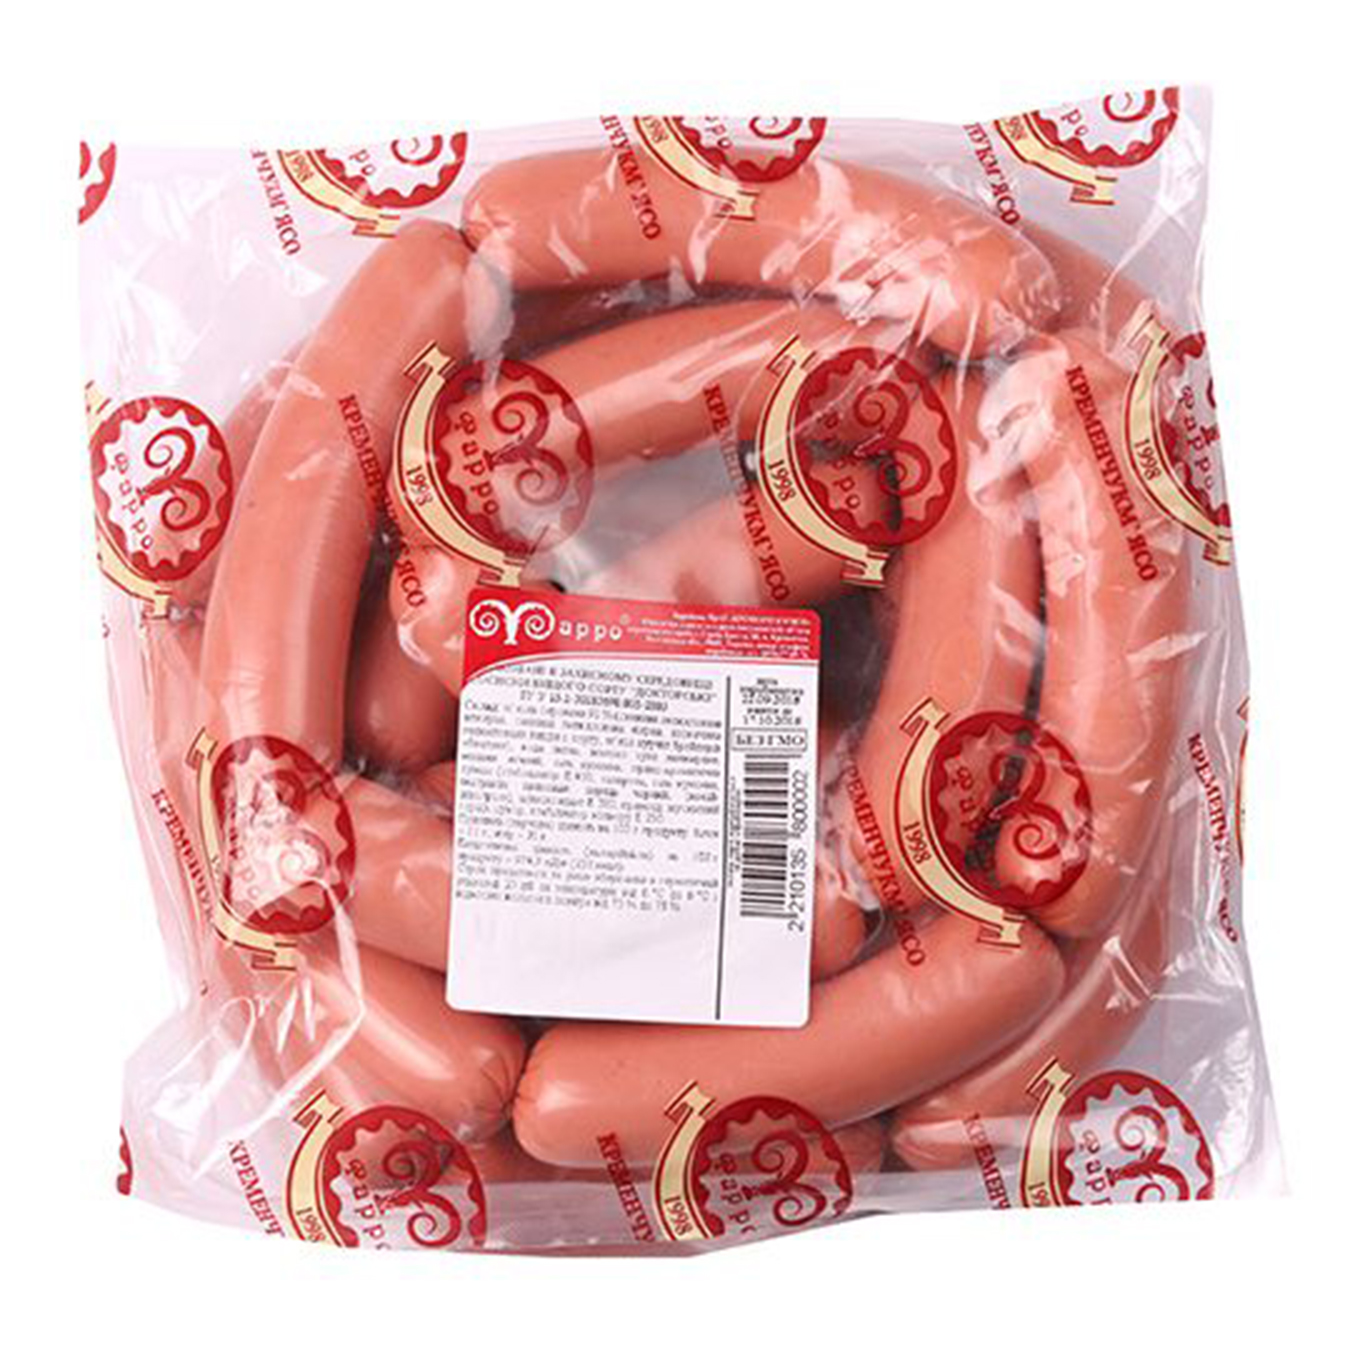 Farro Likarski sausages 550-700 grams per package 2